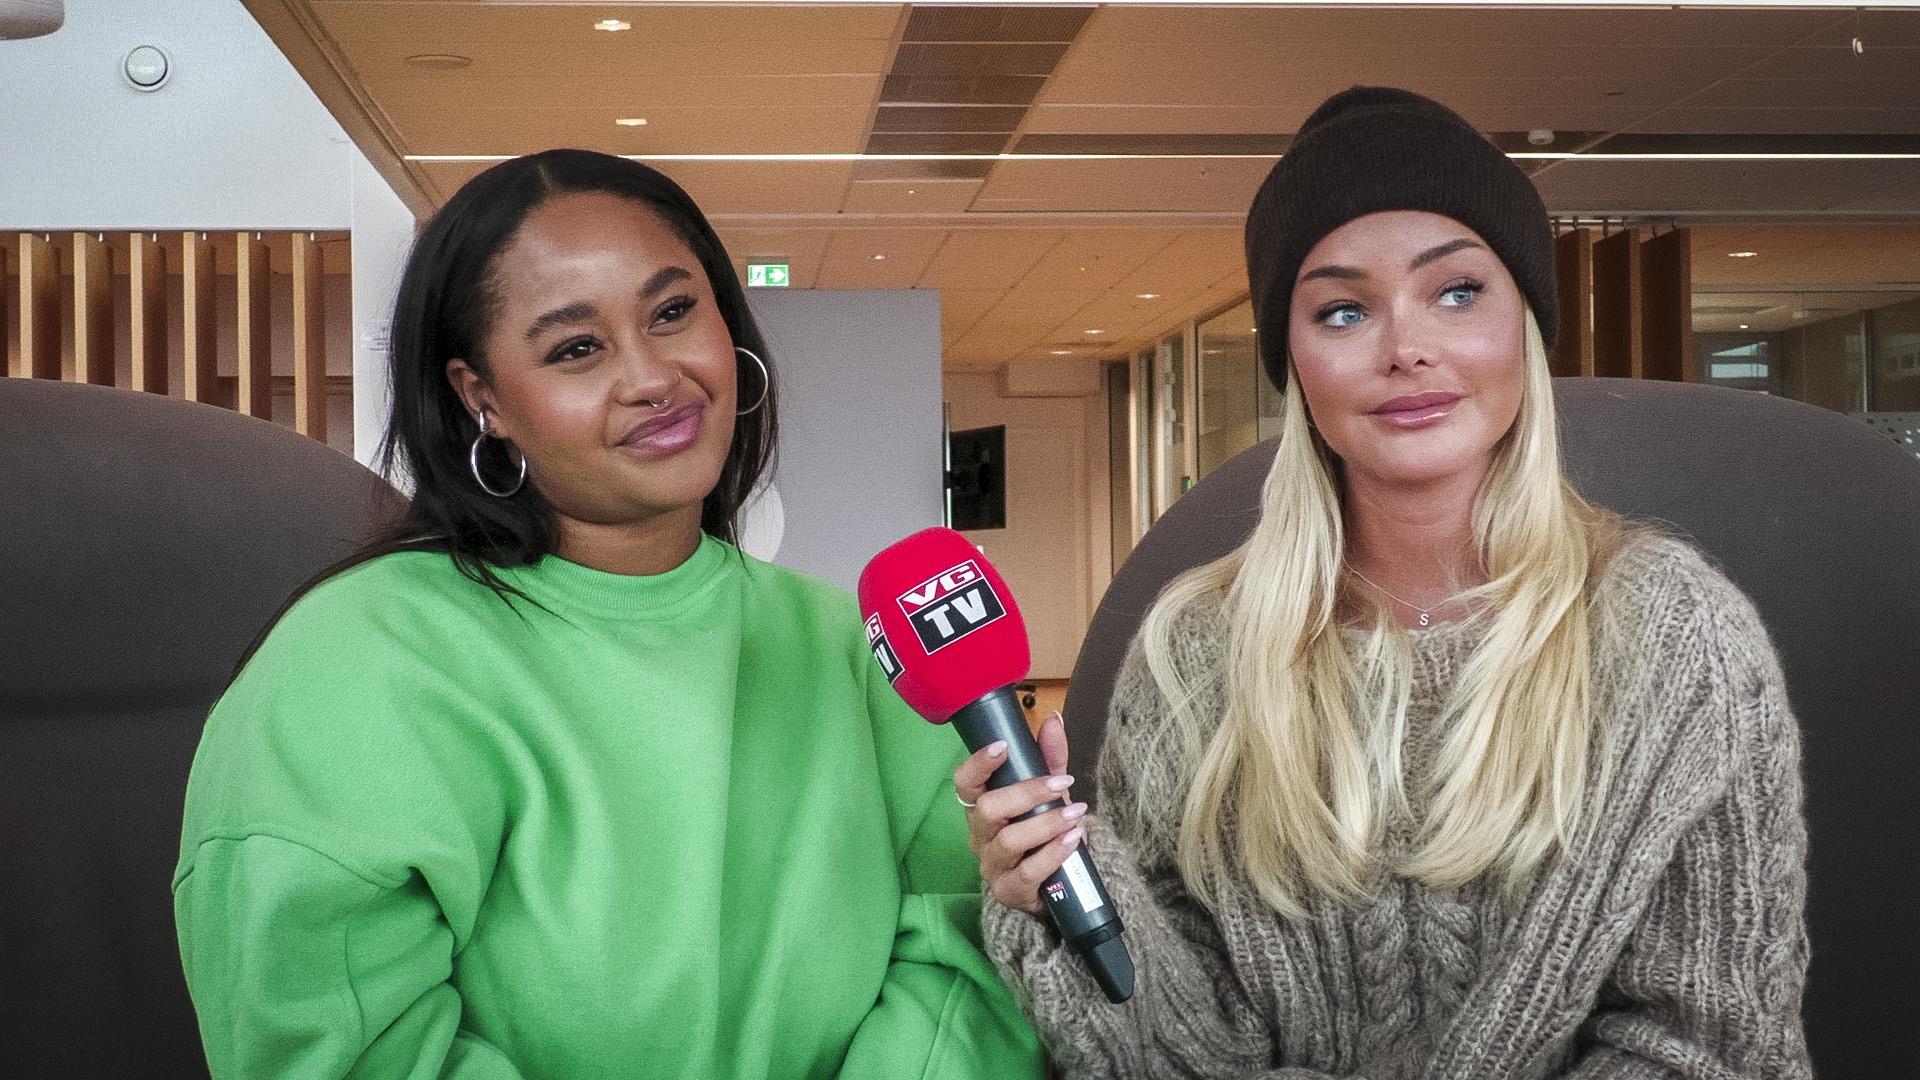 Podkast-duoen Fetisha Williams og Sophie Elise Isachsen har avsluttet samarbeidet sitt med NRK etter en turbulent tid.